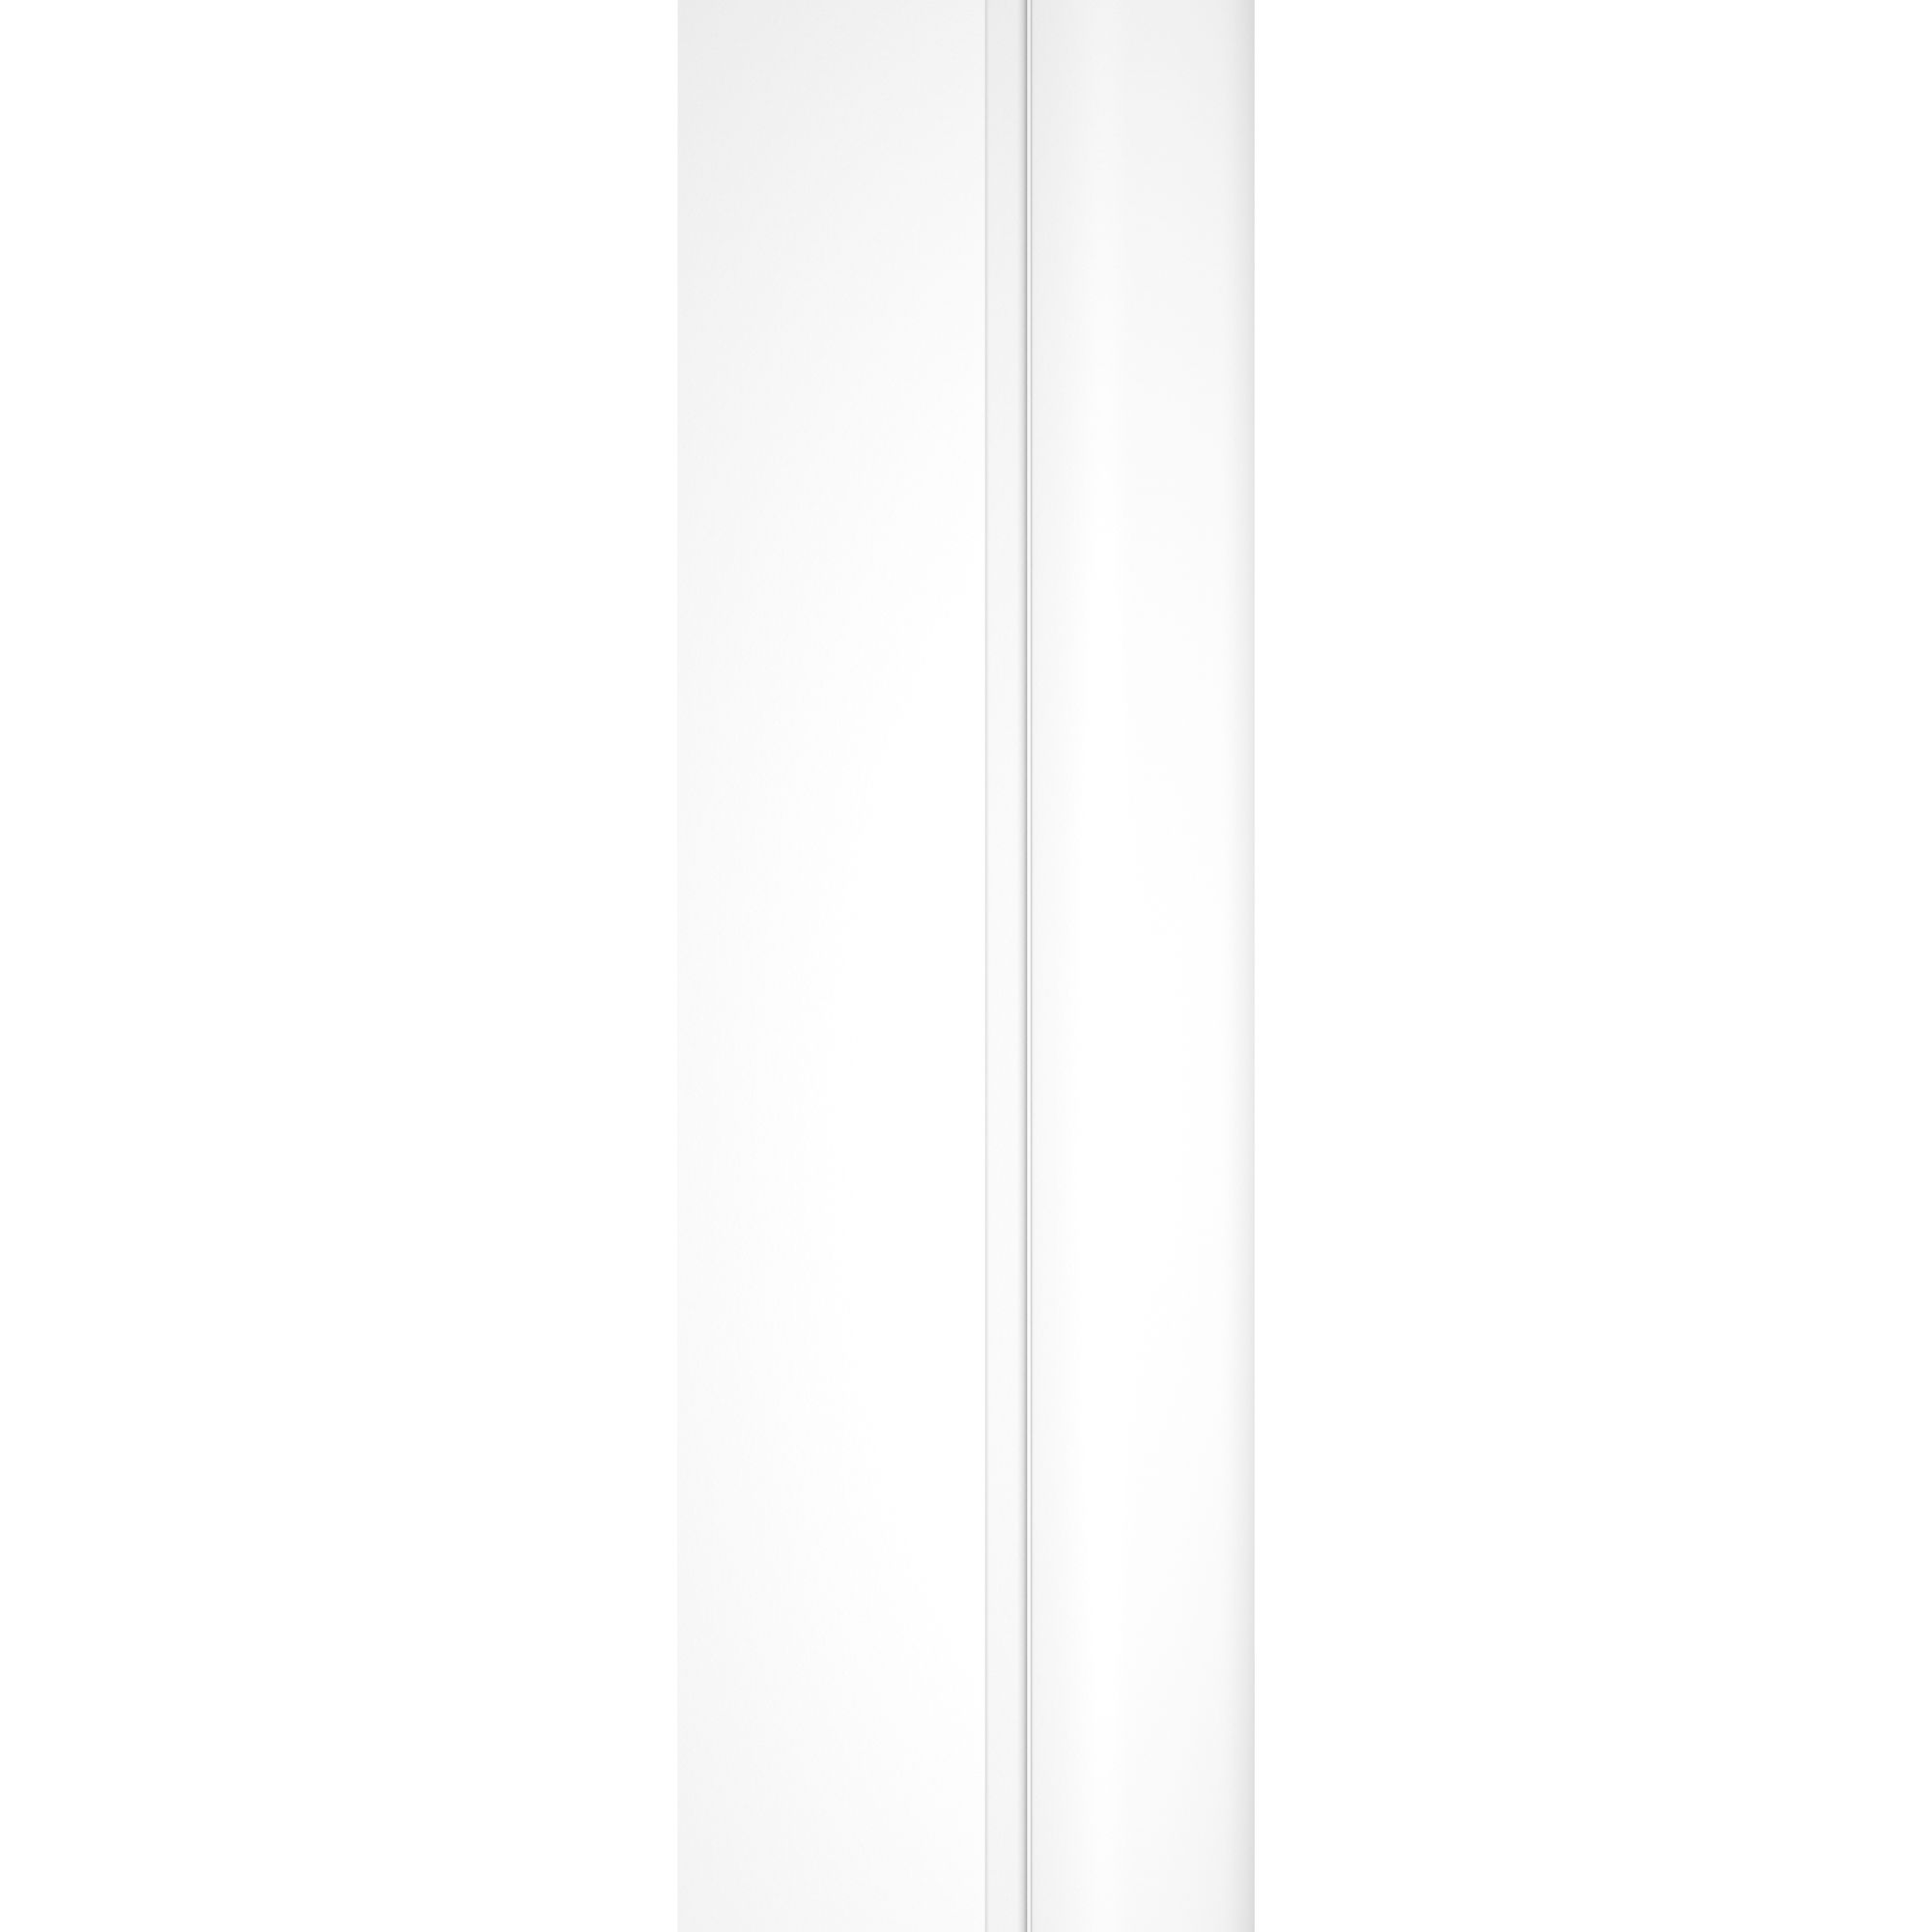 Schulte pare-baignoire rabattable, 80 x 140 cm, verre 5 mm, écran paroi de baignoire mobile 1 volet pivotant, profilé blanc mat Atelier 3